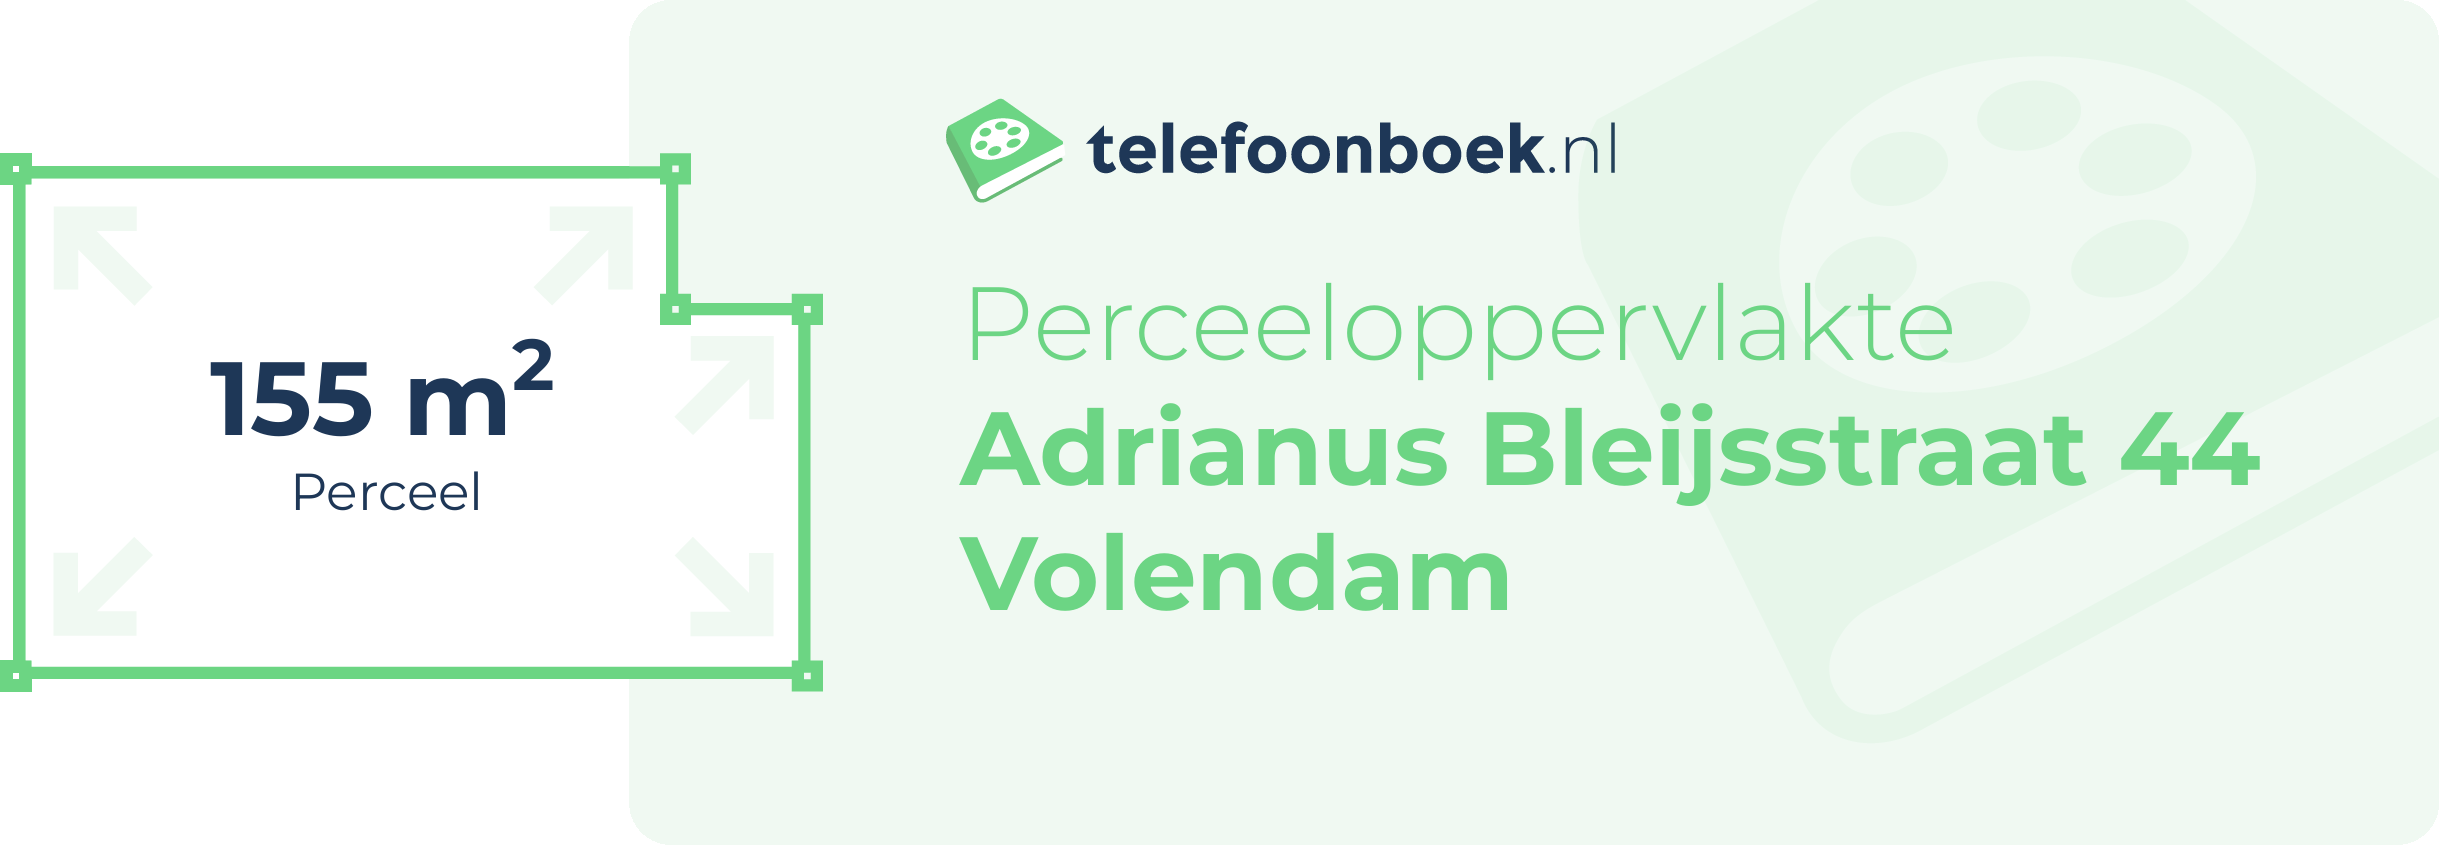 Perceeloppervlakte Adrianus Bleijsstraat 44 Volendam